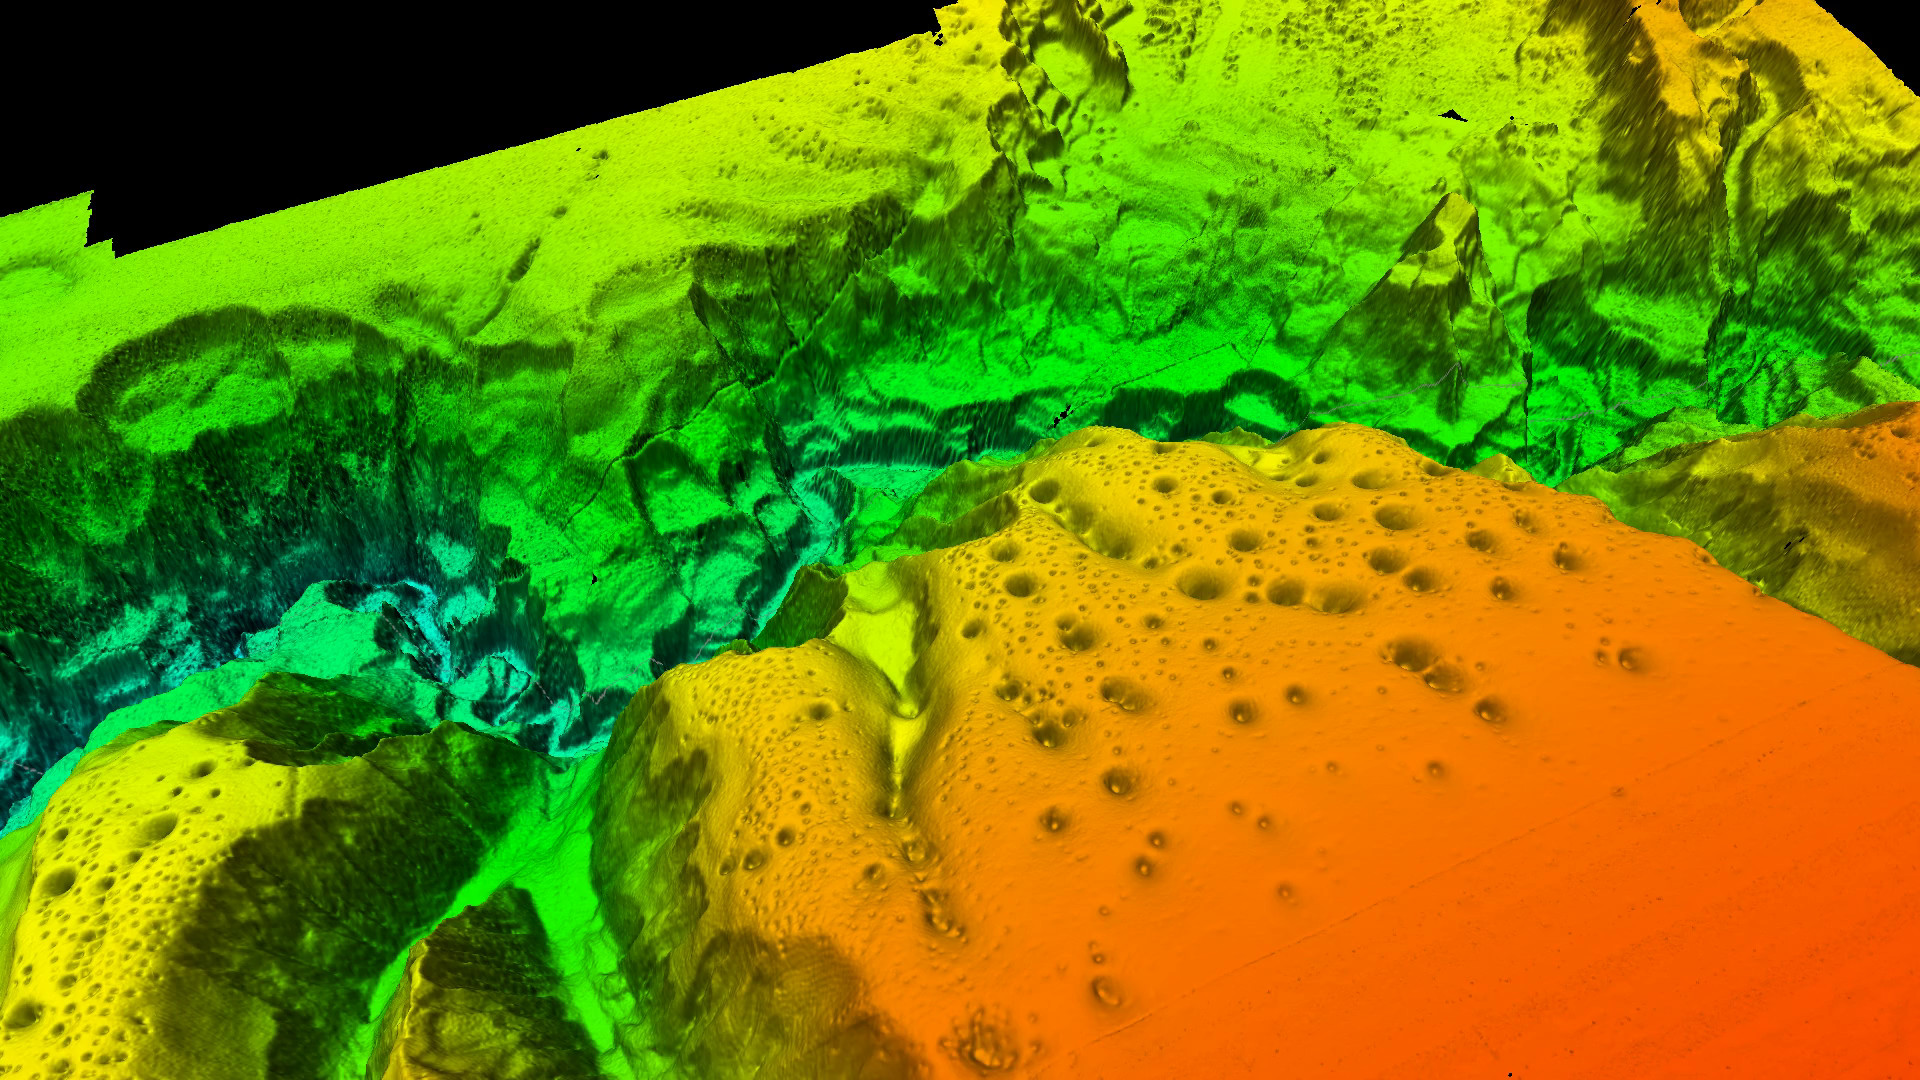 Reconstrucción 3D del fondo marino de Capbreton / IEO